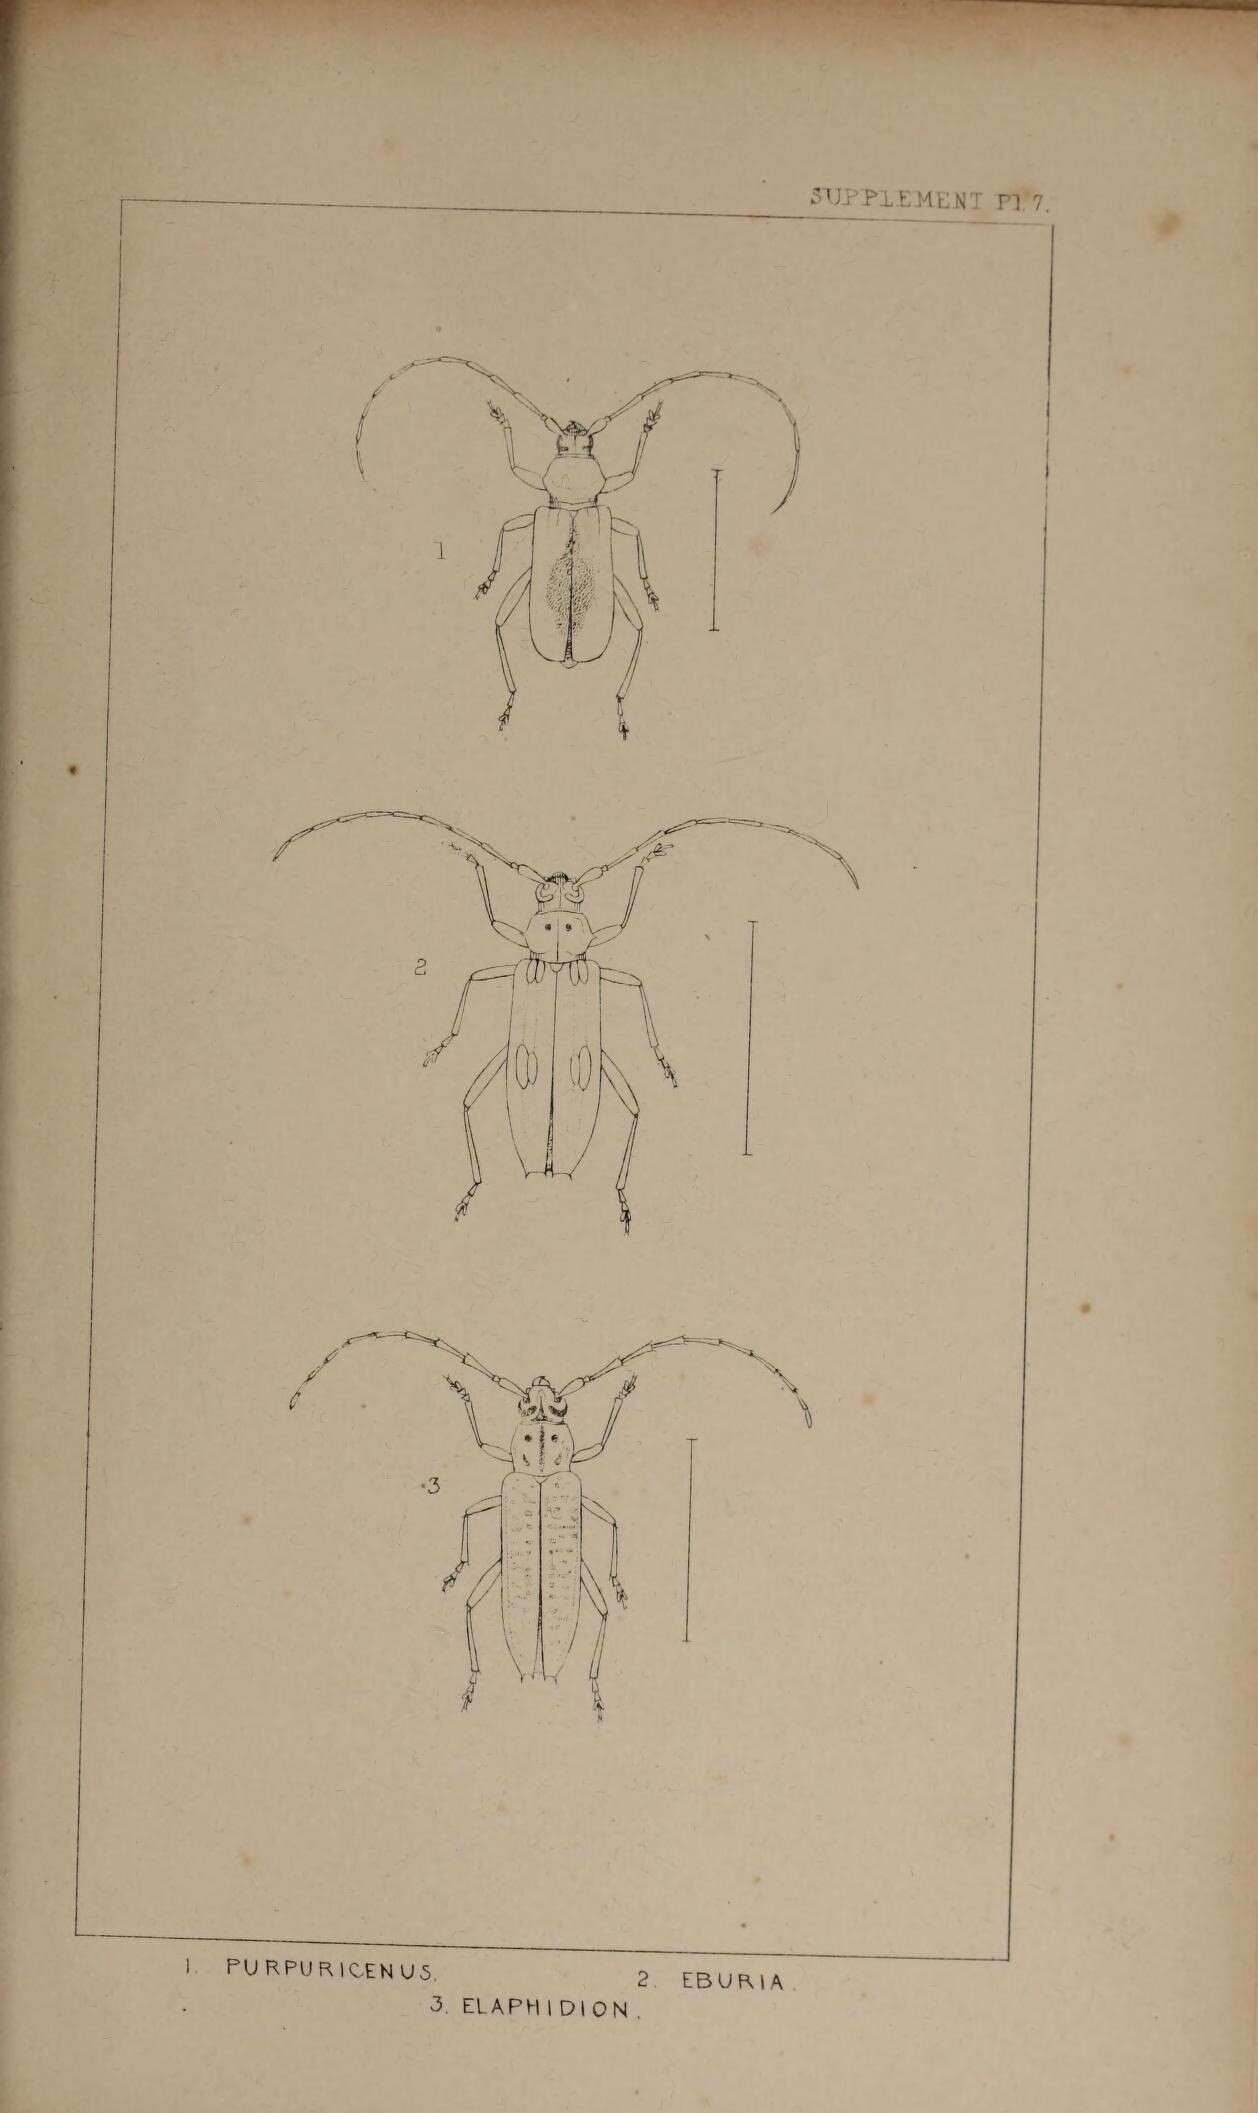 Image of Purpuricenus kaehleri (Linné 1758)